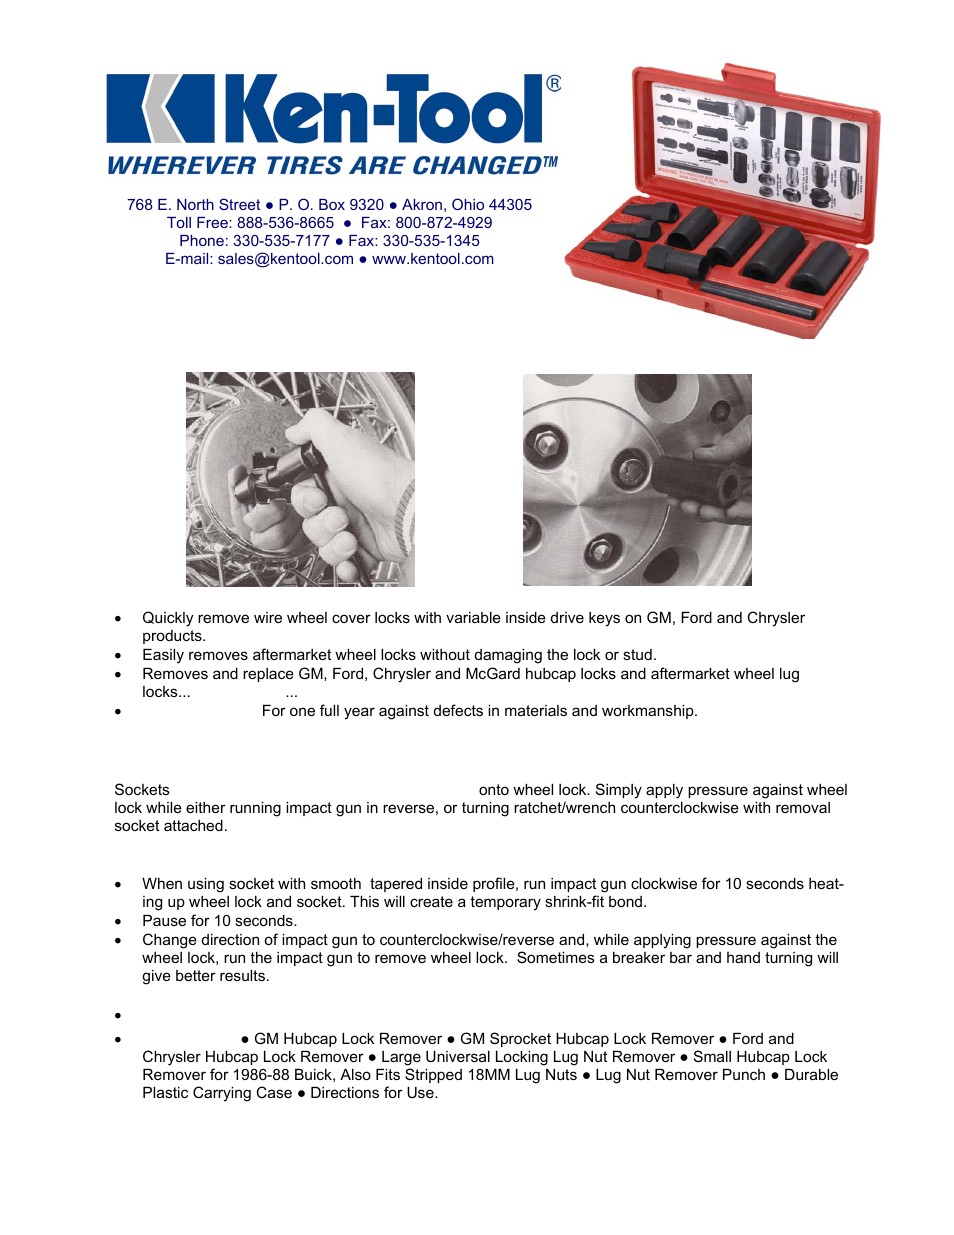 Ken-Tool 30170 Wheel Lock Removal Kit 